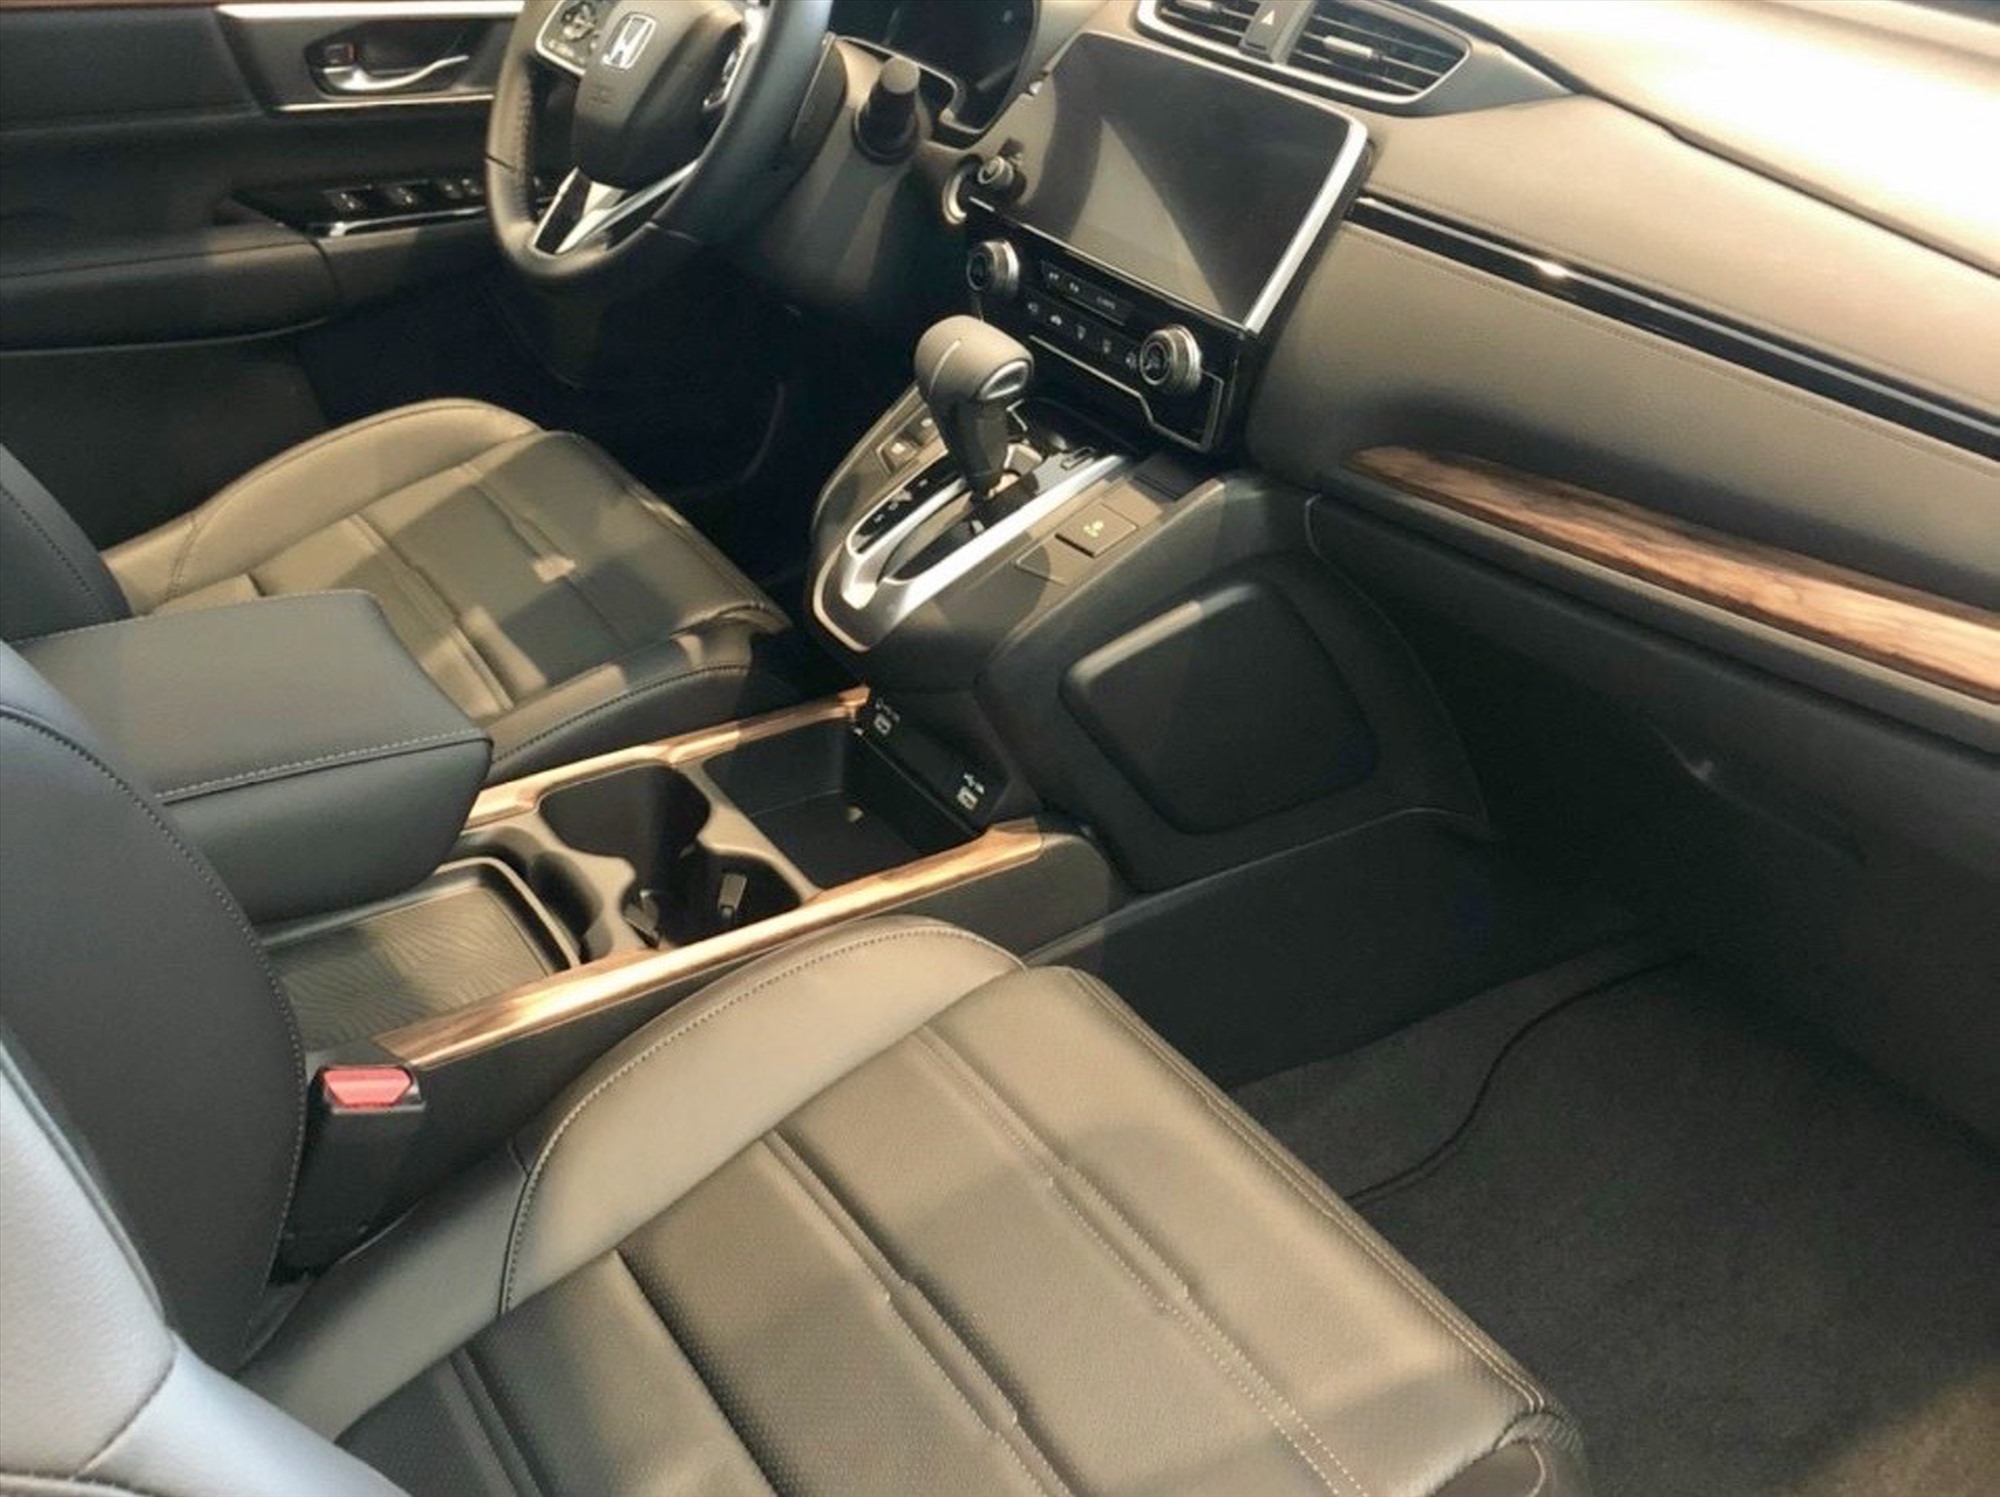 Khoang nội thất của Honda CR-V. Ảnh: Honda